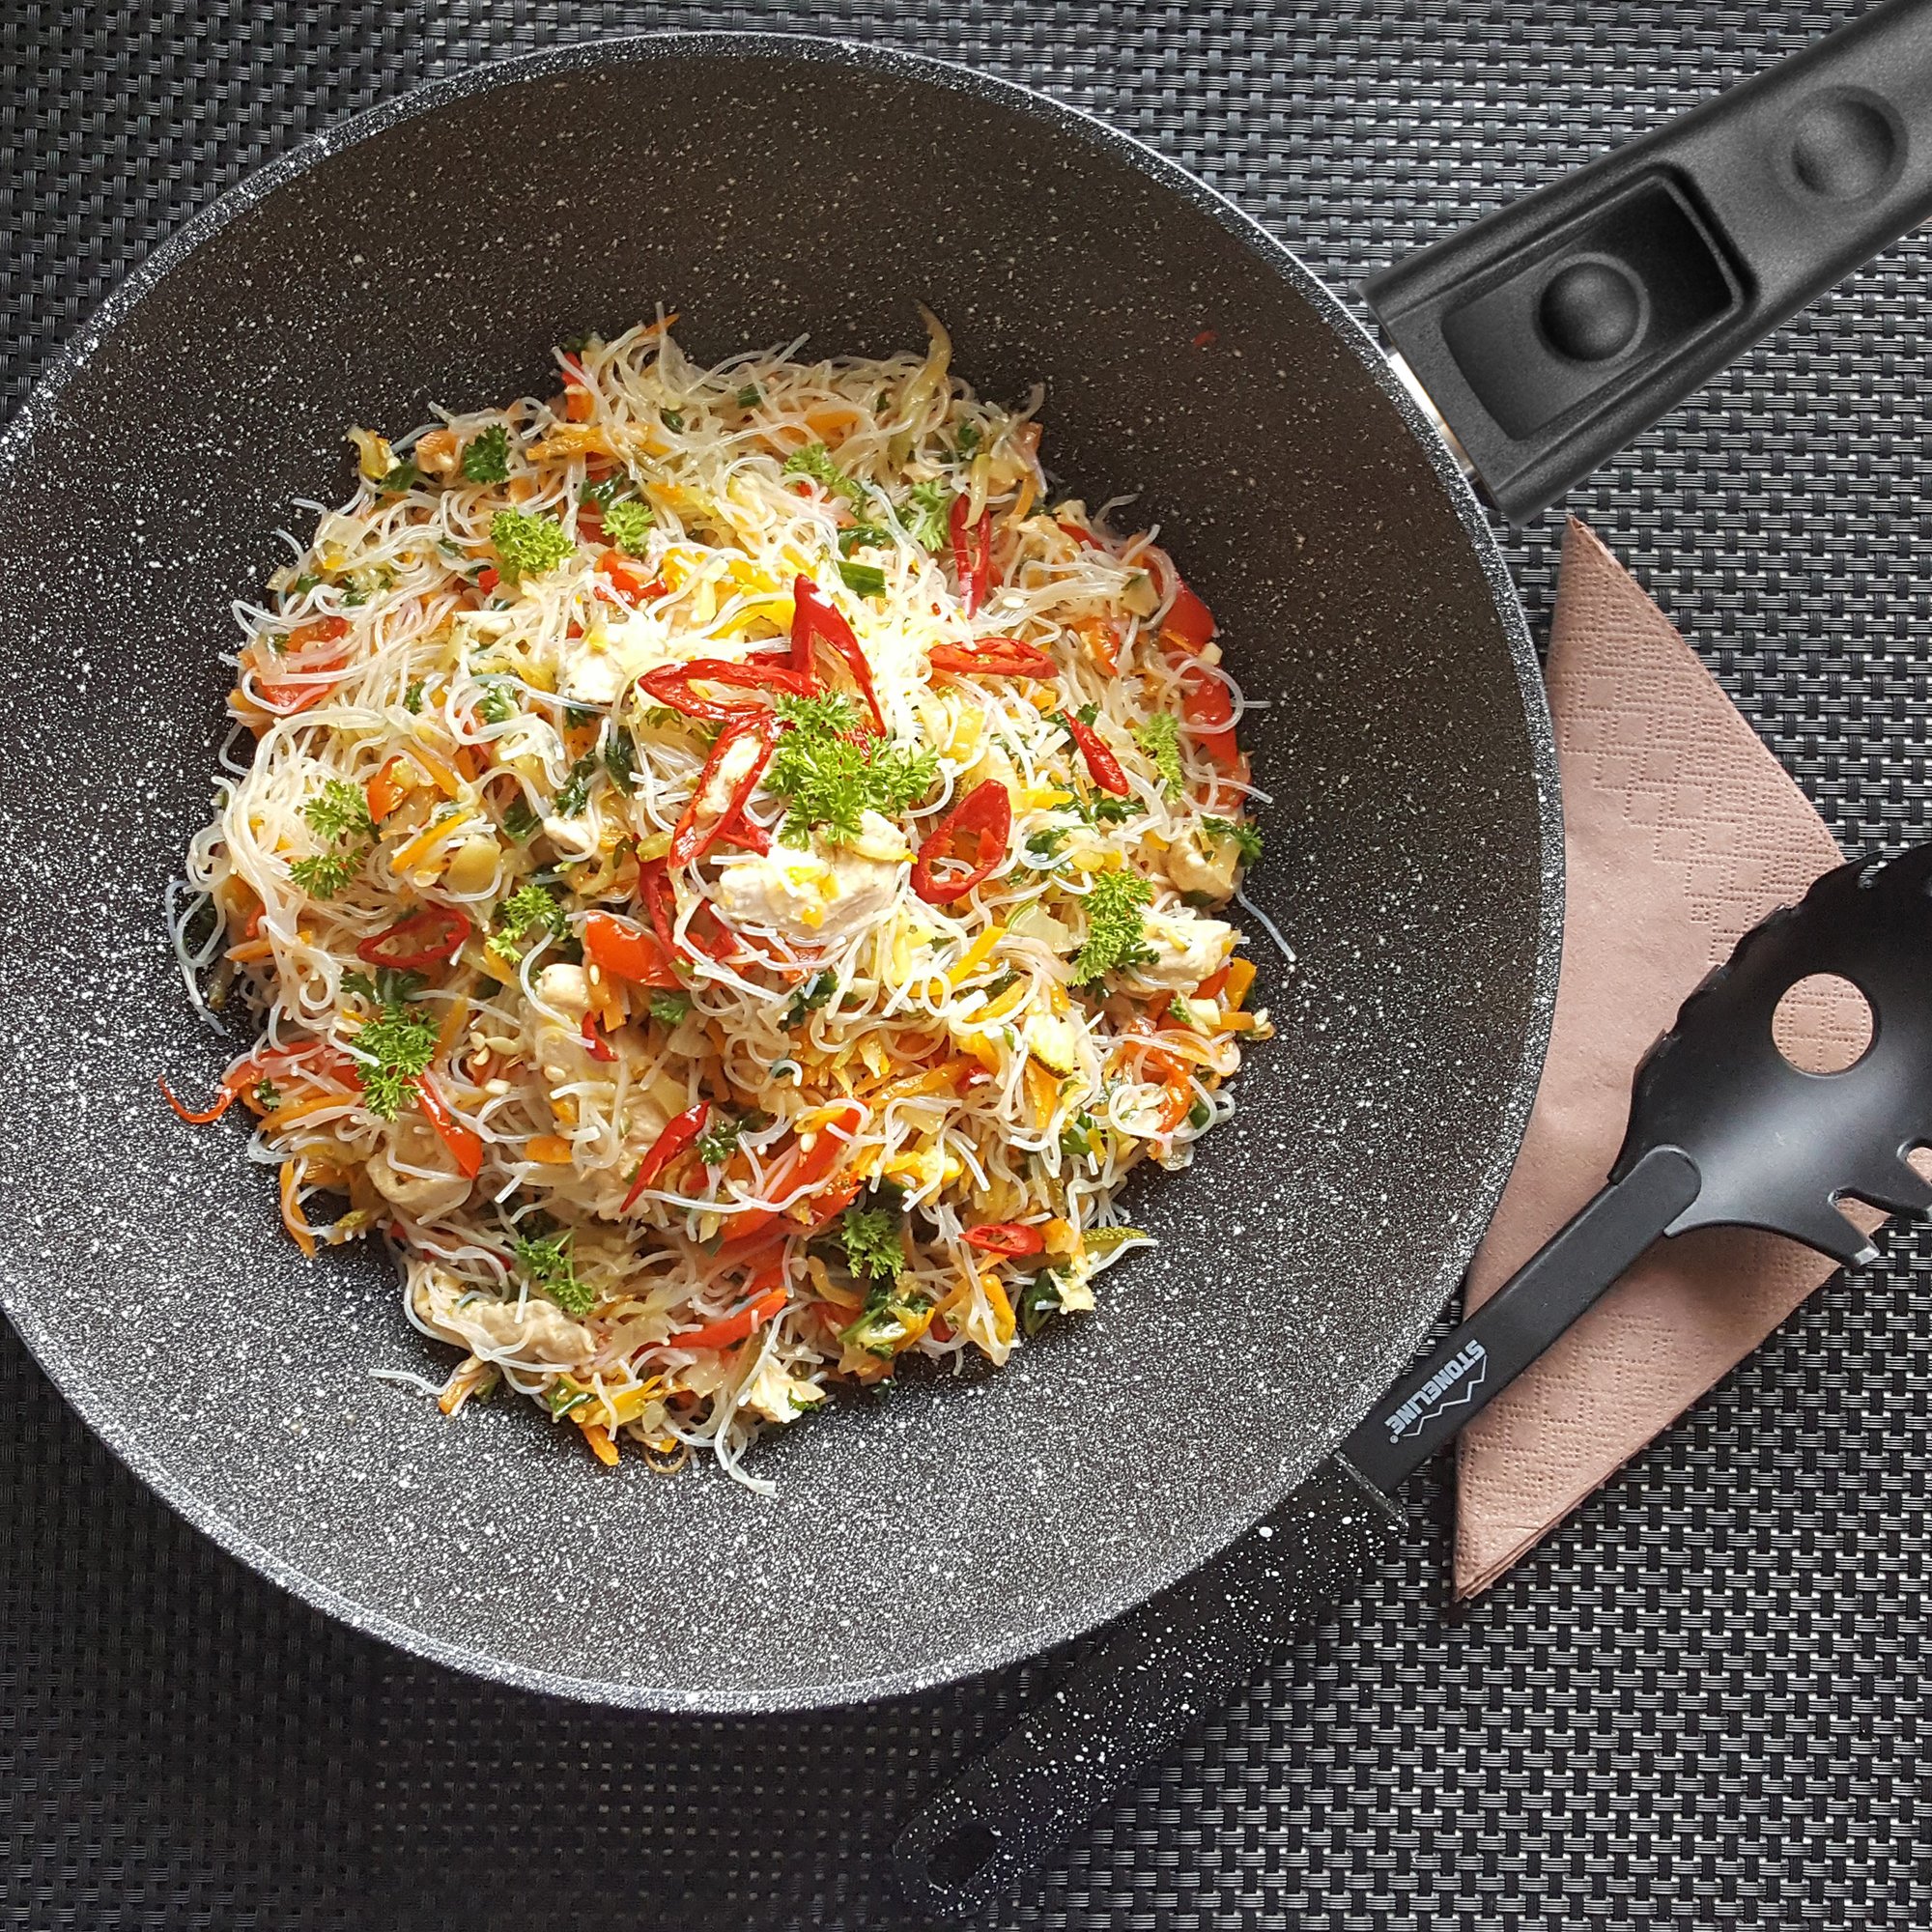 STONELINE® Sartén wok 30 cm, Made in Germany, con mango extraíble, apta para inducción